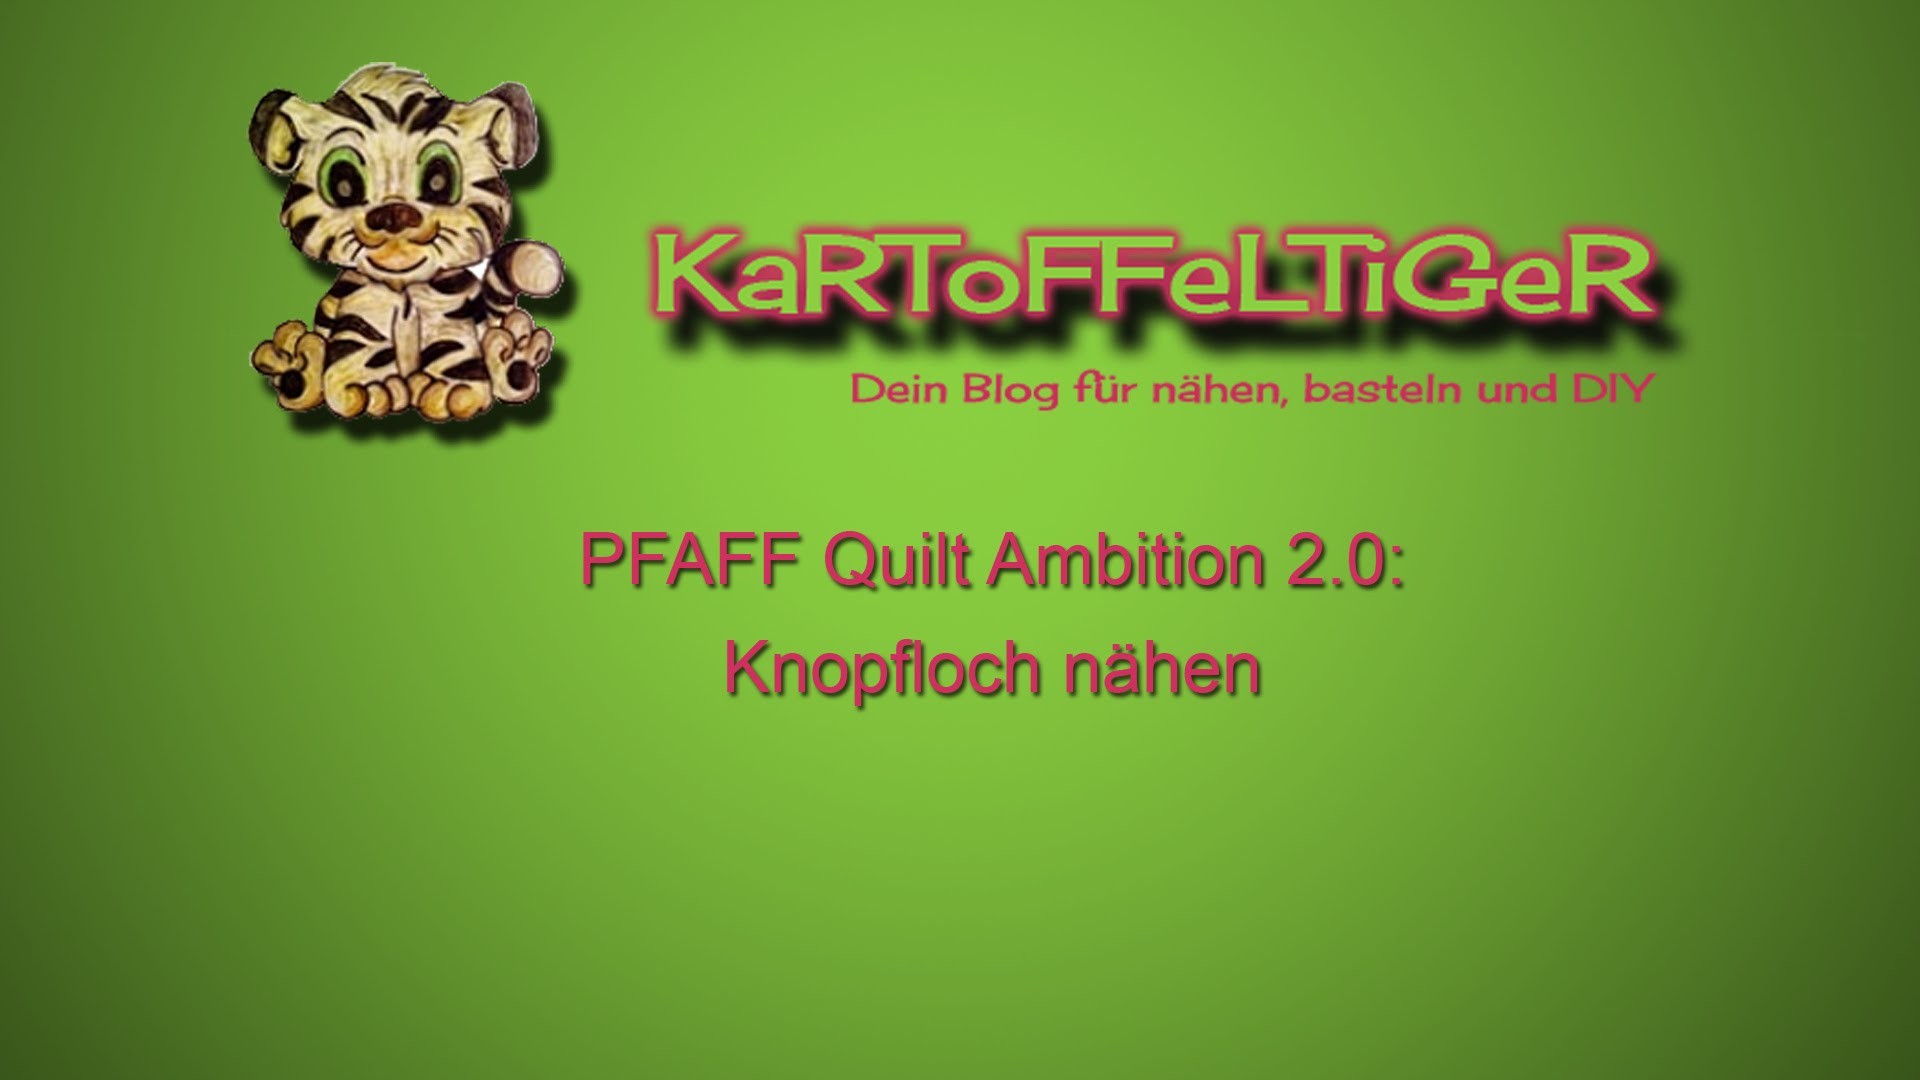 DIY - Wir nähen ein Knopfloch mit der PFAFF Quilt Ambition 2.0